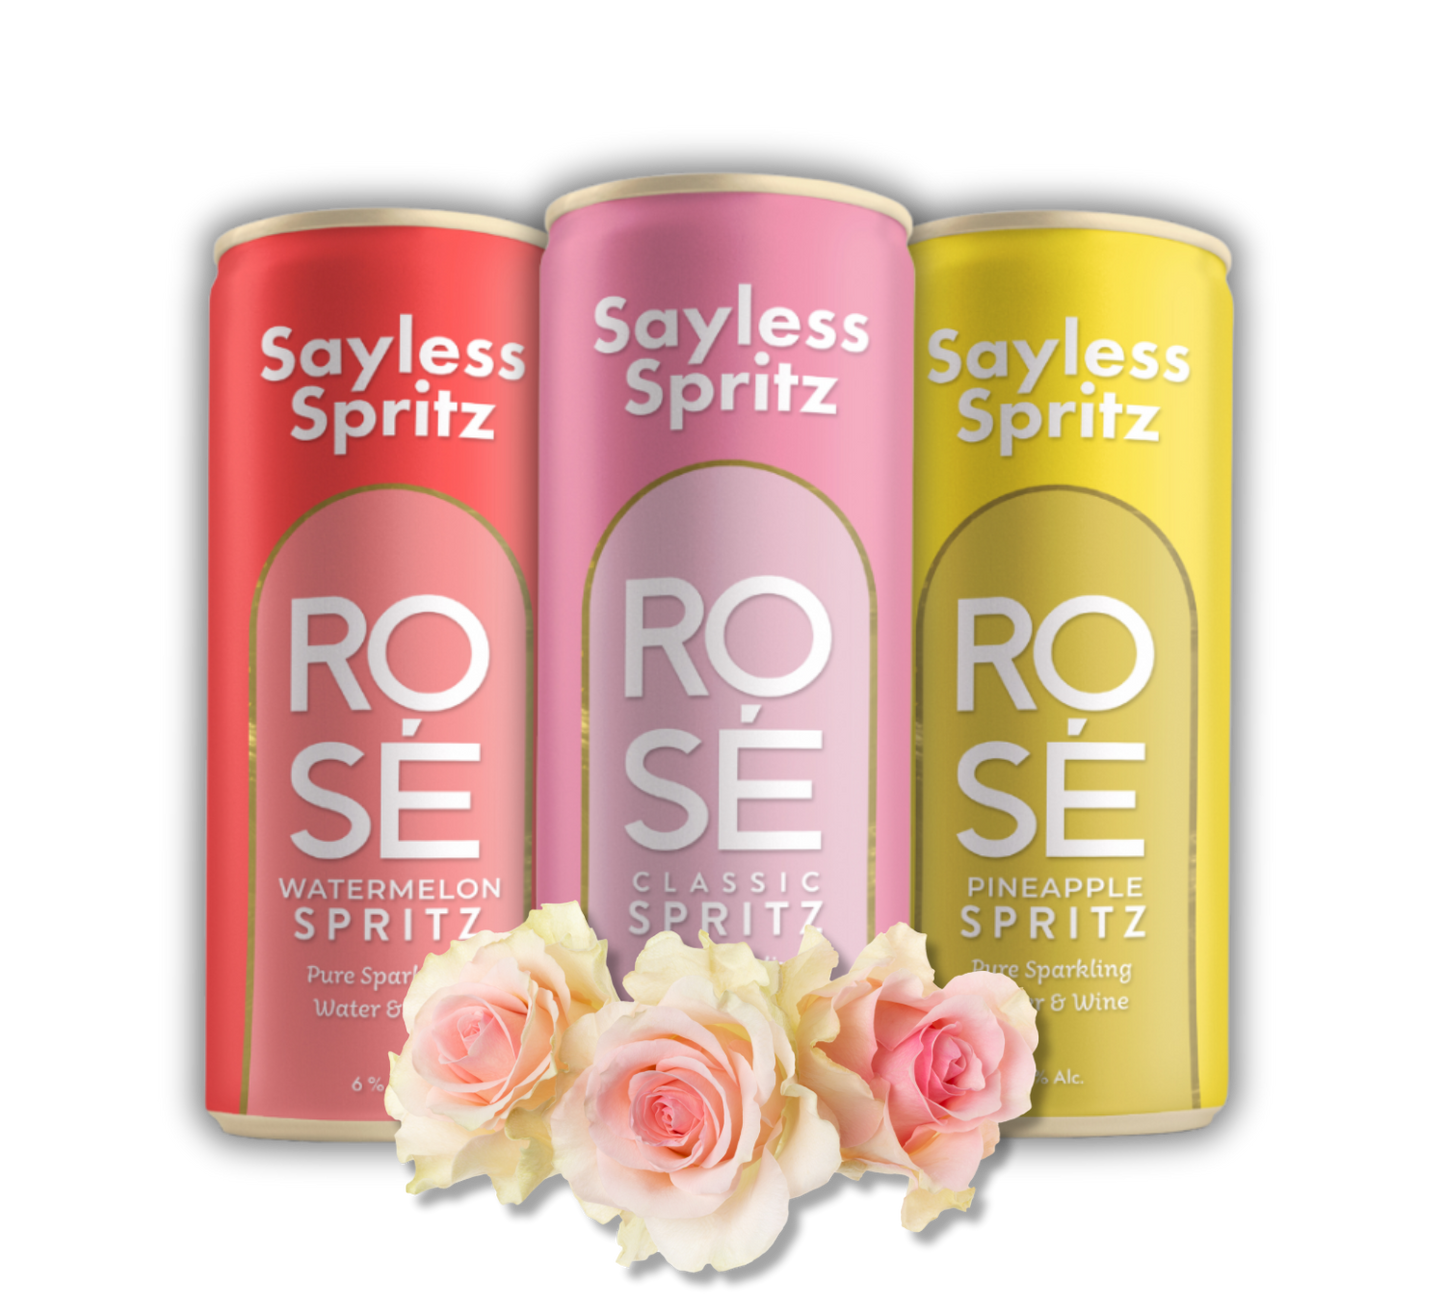 Rosé Spritz Variety Pack